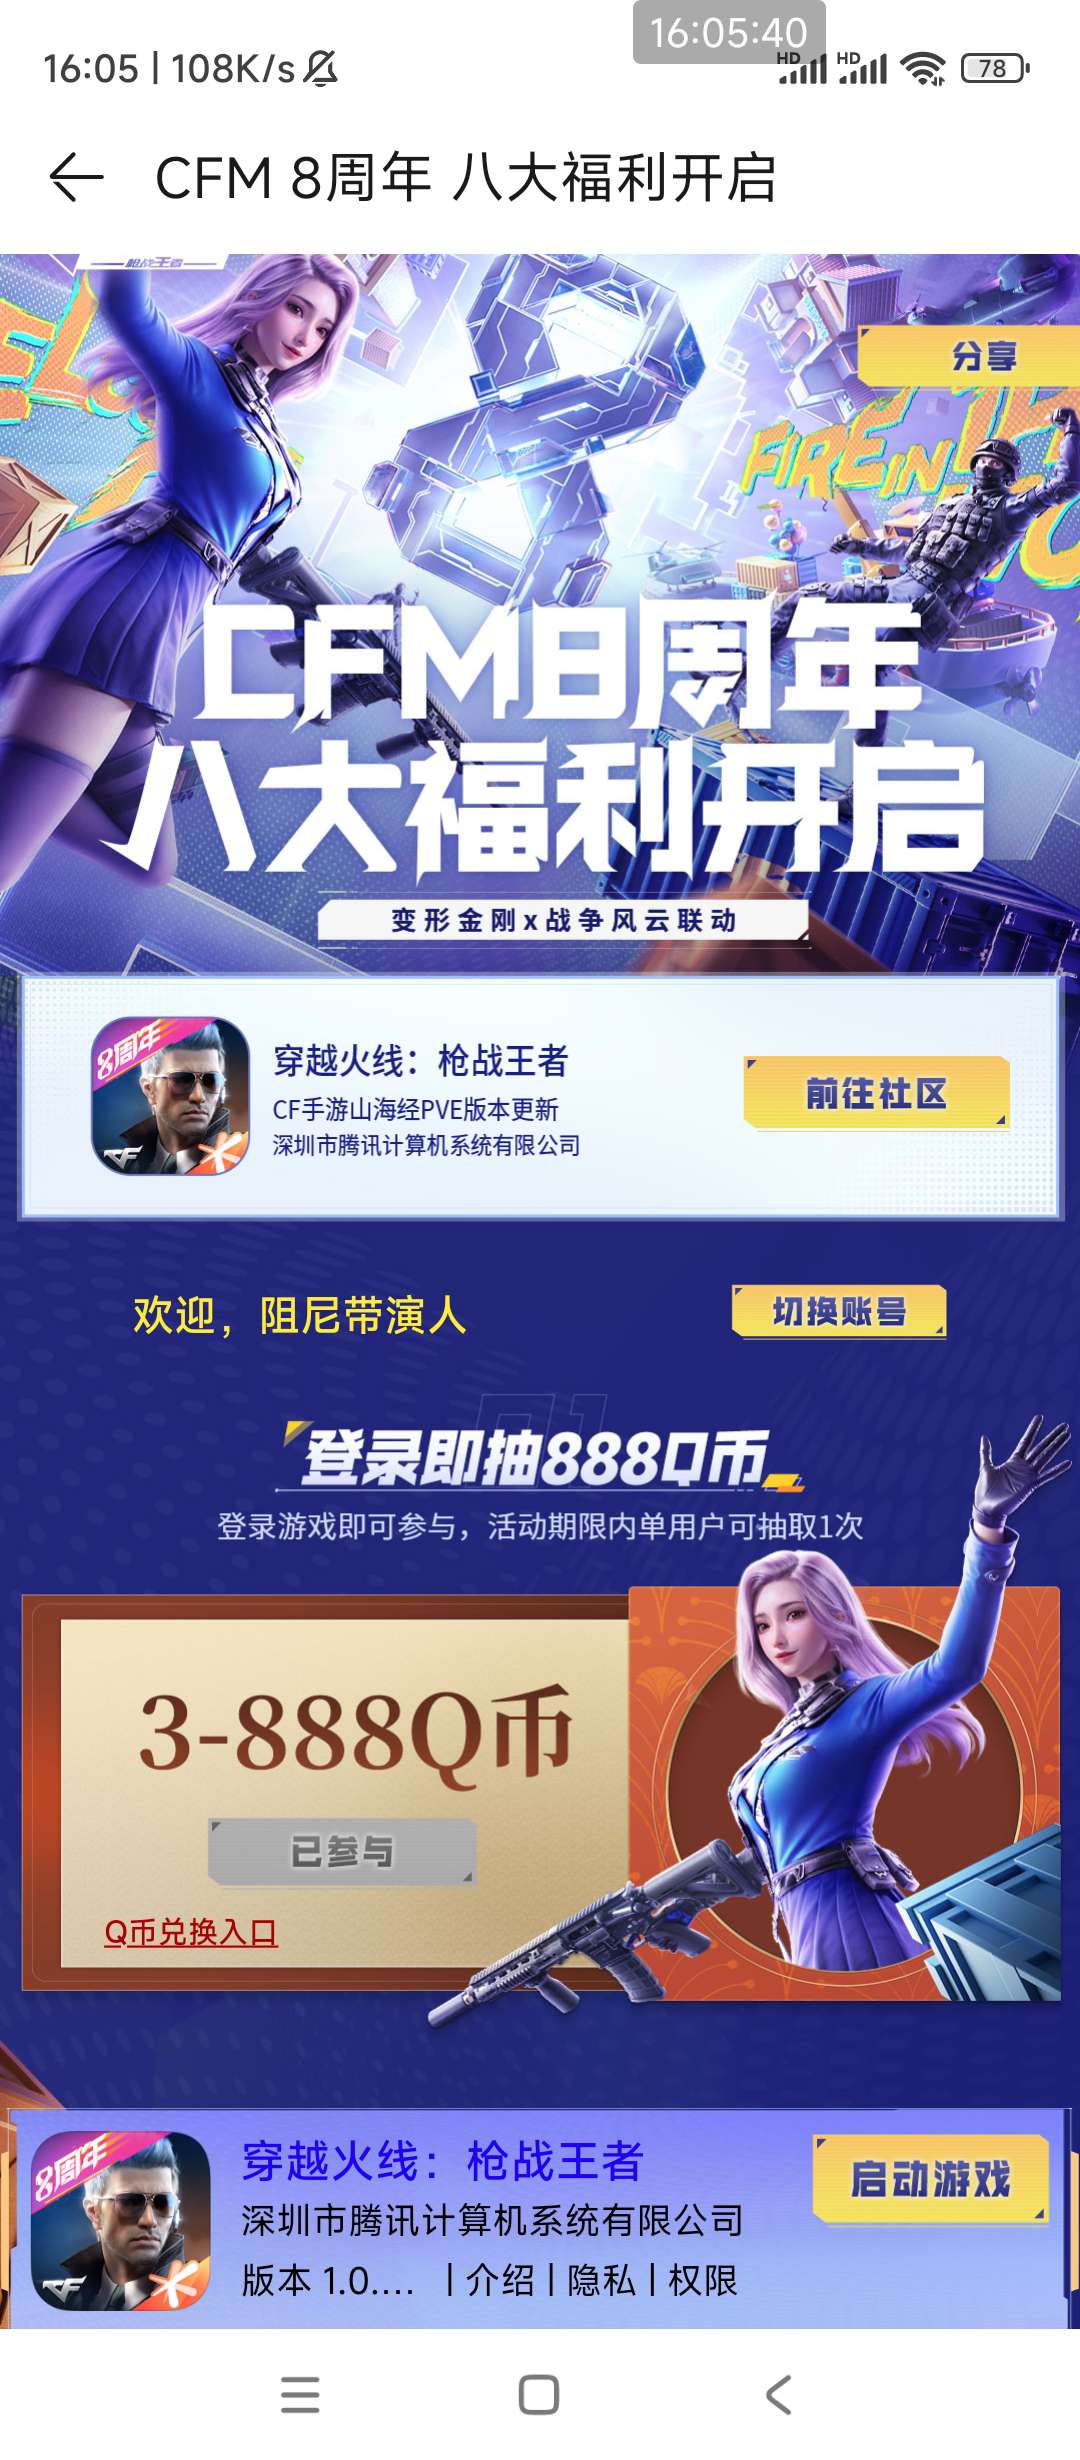 华为游戏中心CFM8周年福利